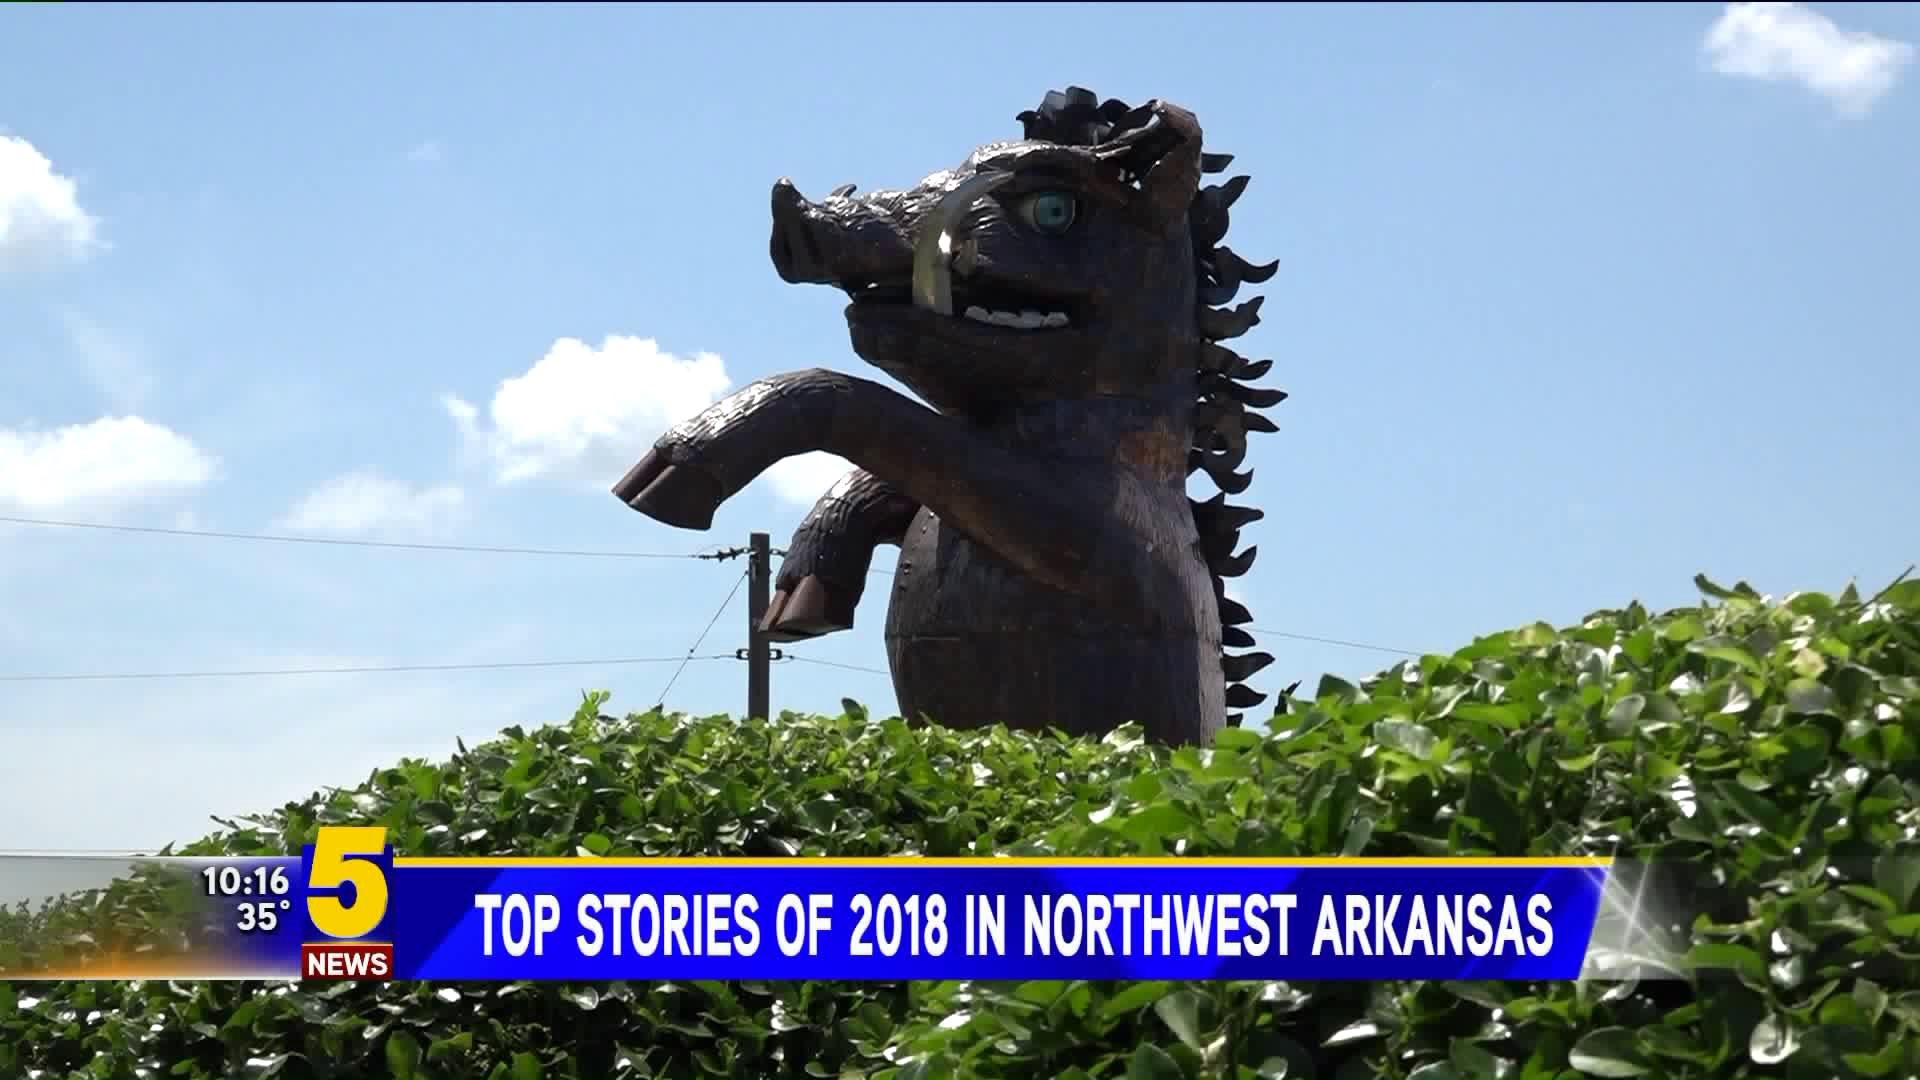 Top stories of 2018 in Northwest Arkansas